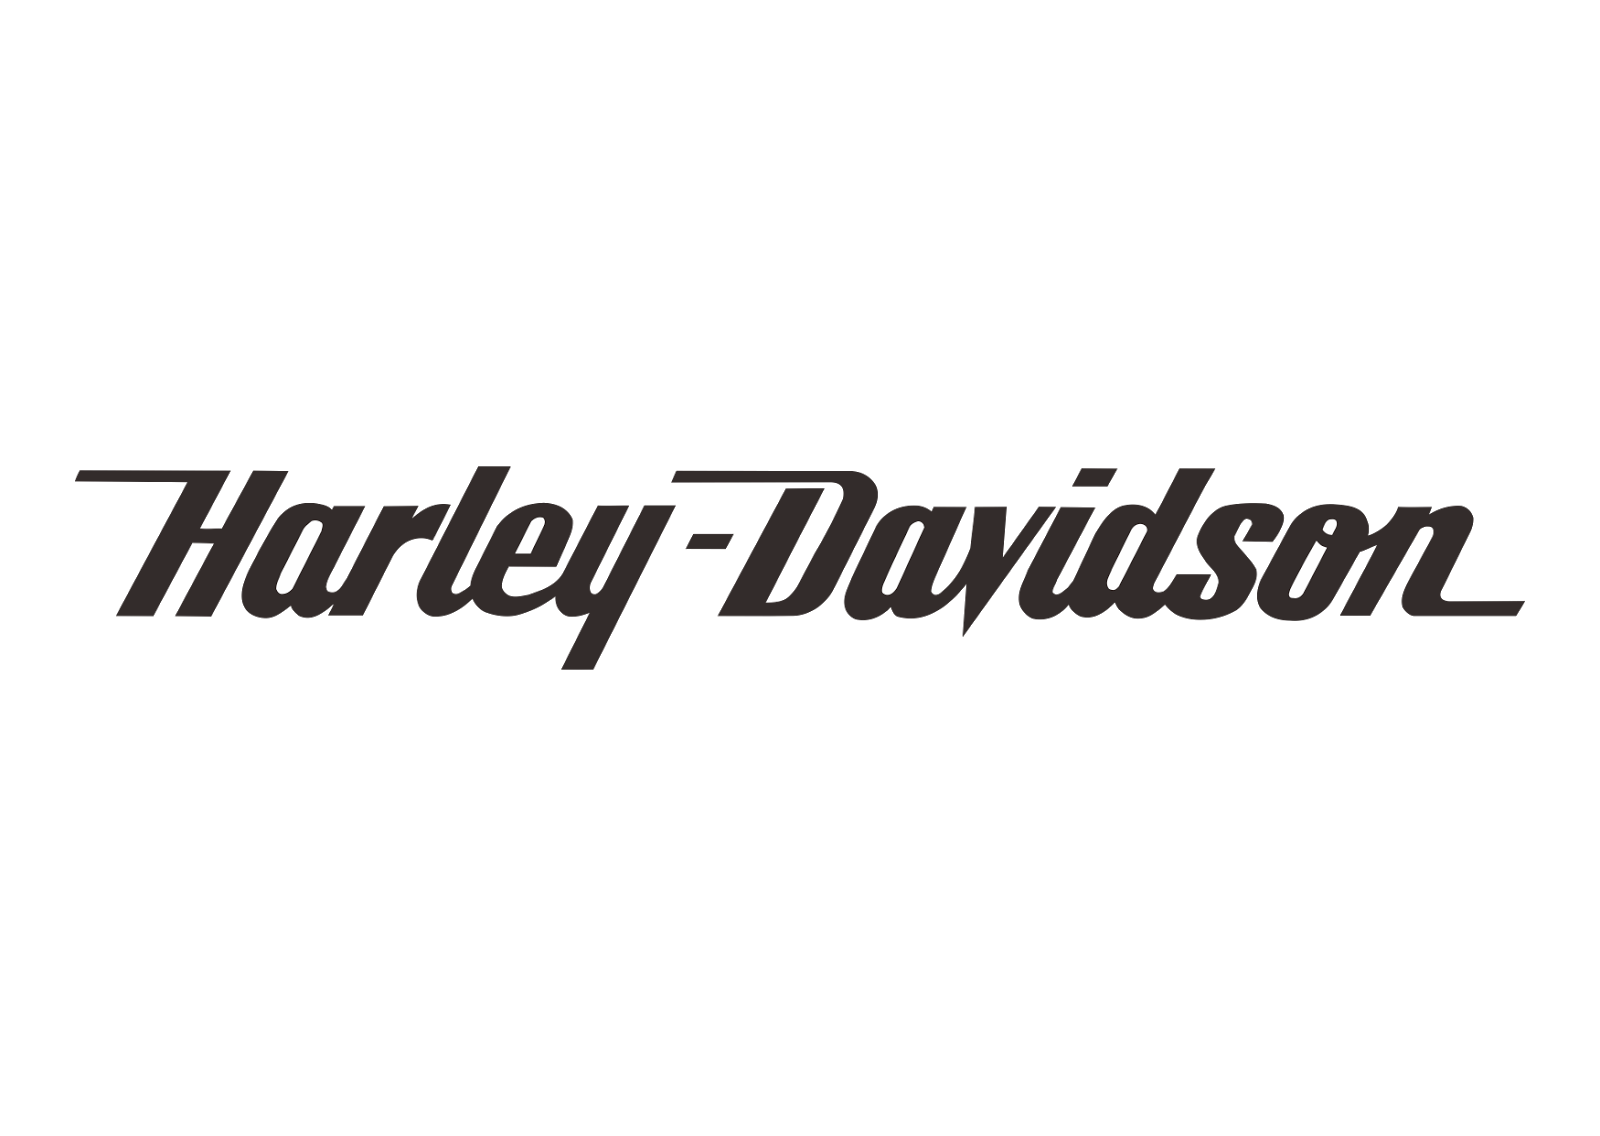 Harley Davidson (text) Logo Vector Black White ~ Free Vector Logos ...